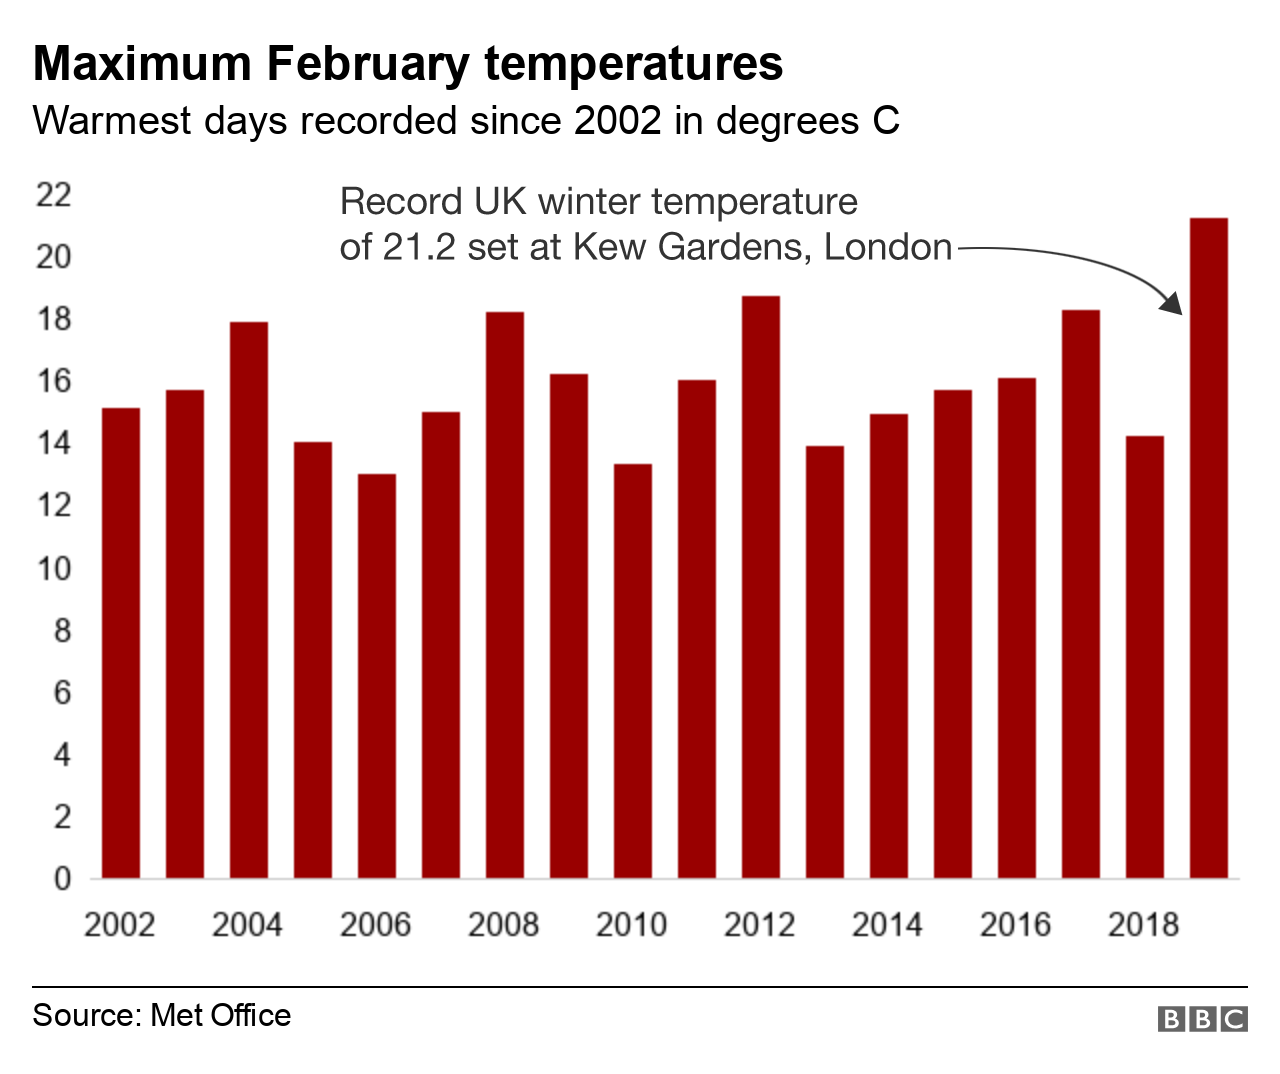 Maximum temperatures in February